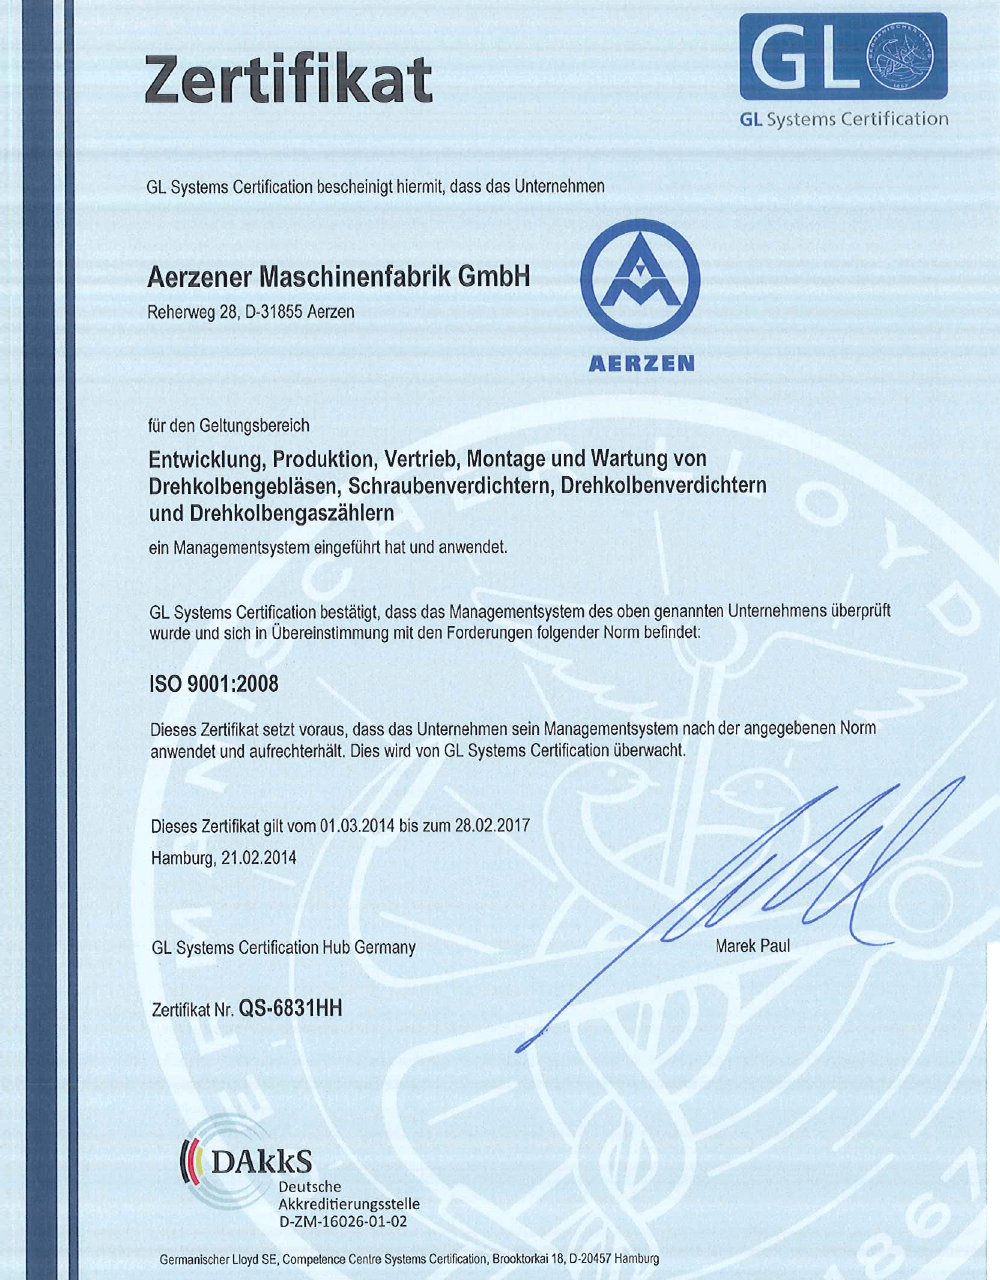 Certyfikat kontroli jakości według DIN ISO 9001